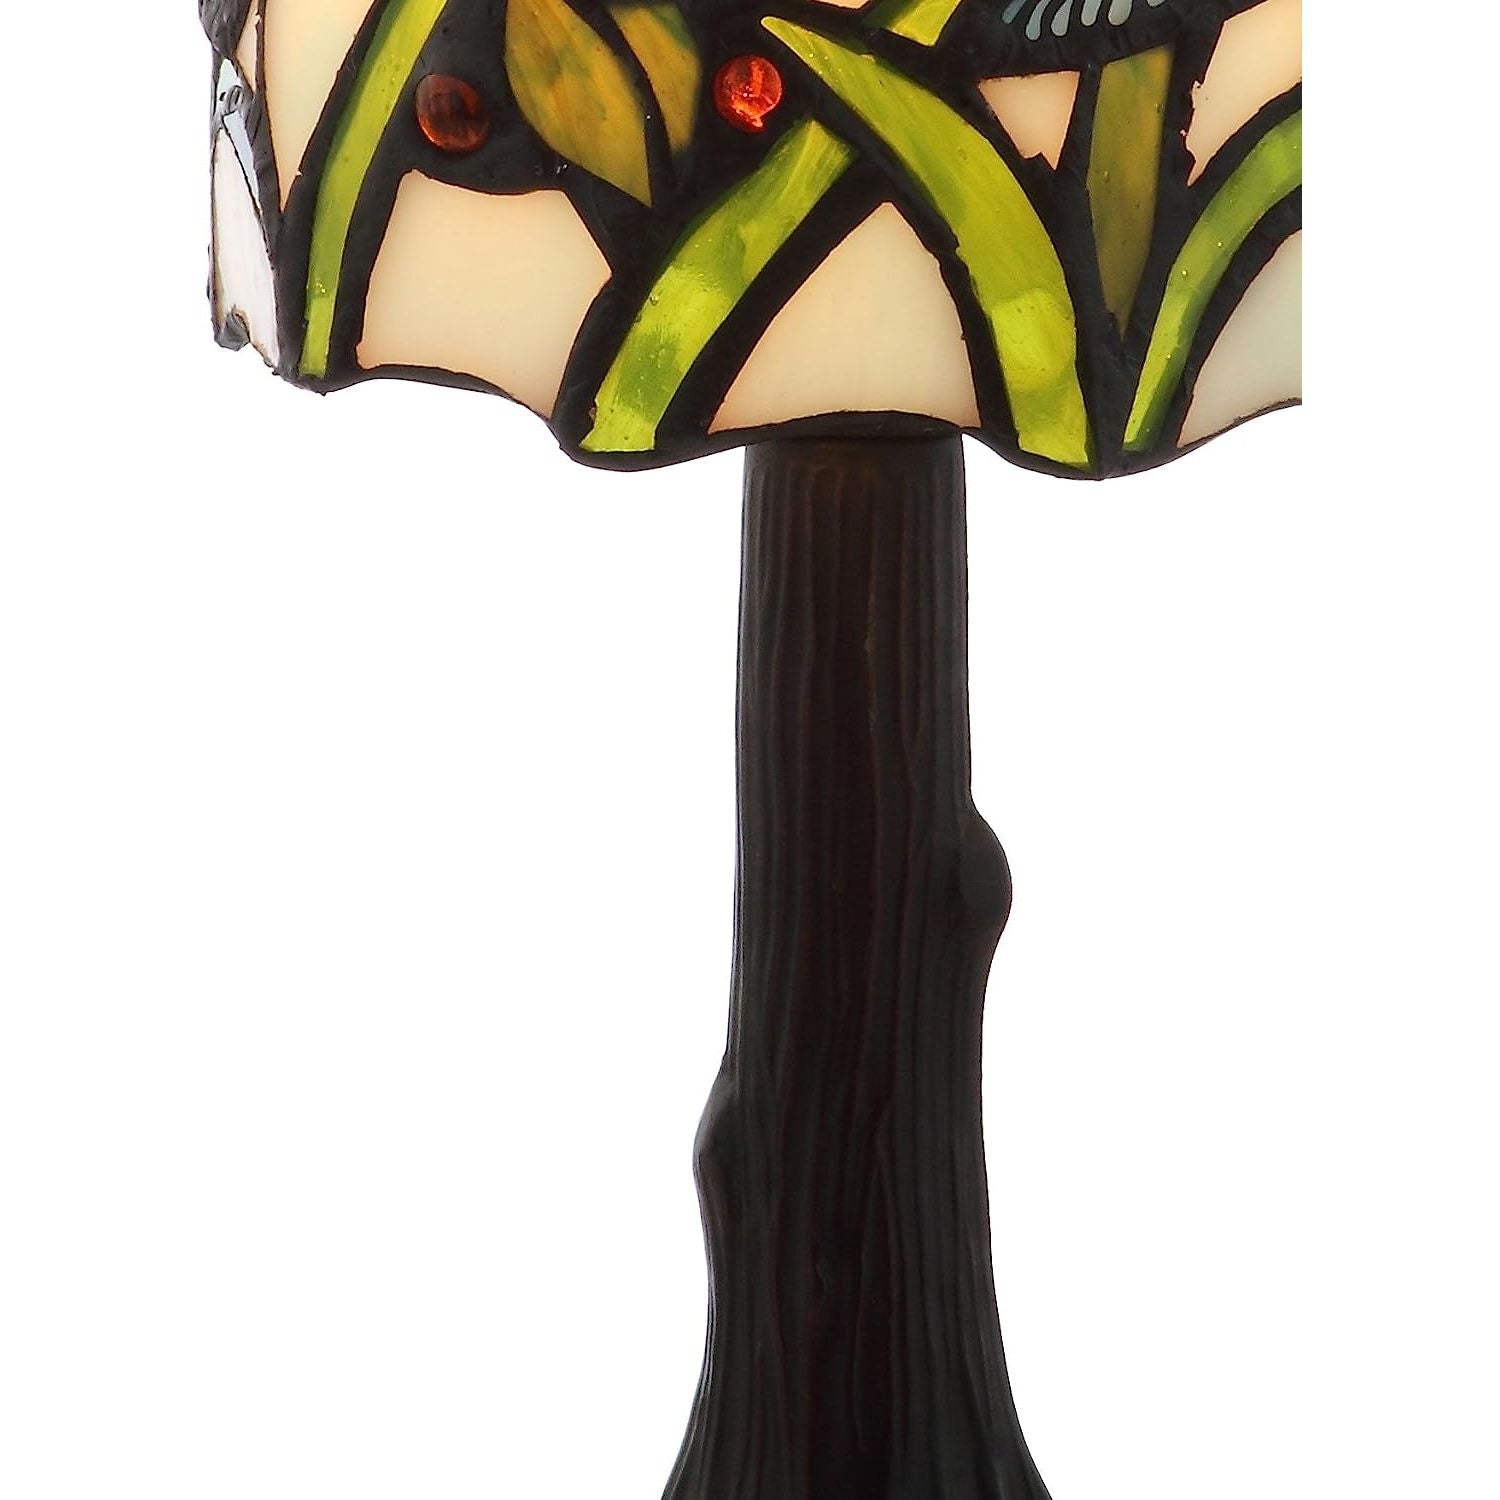 Lámpara de Mesa - Monnry